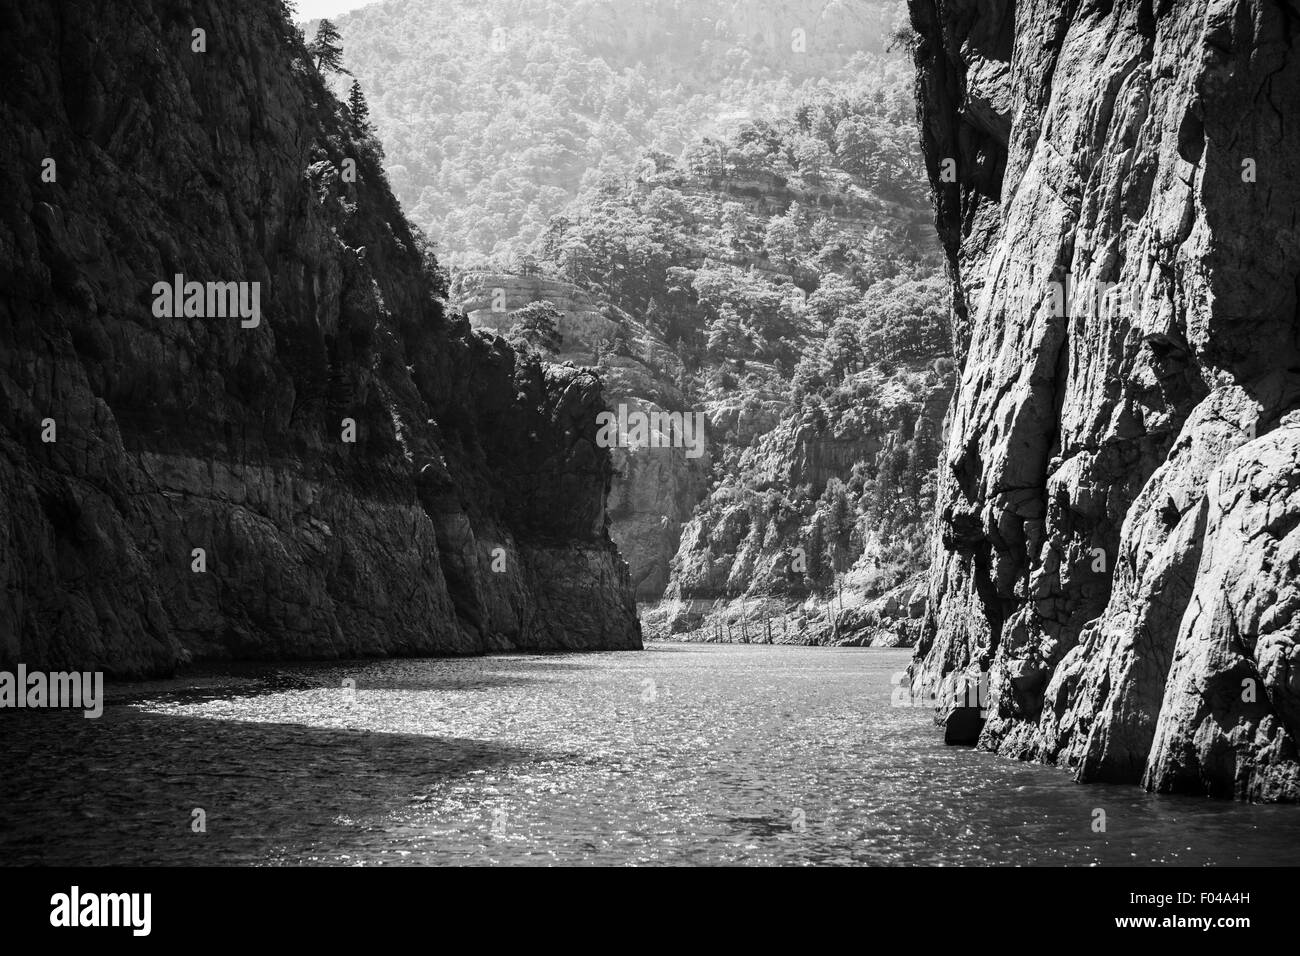 Felsen von Green Canyon See in der Türkei, schwarz / weiß Foto Stockfoto